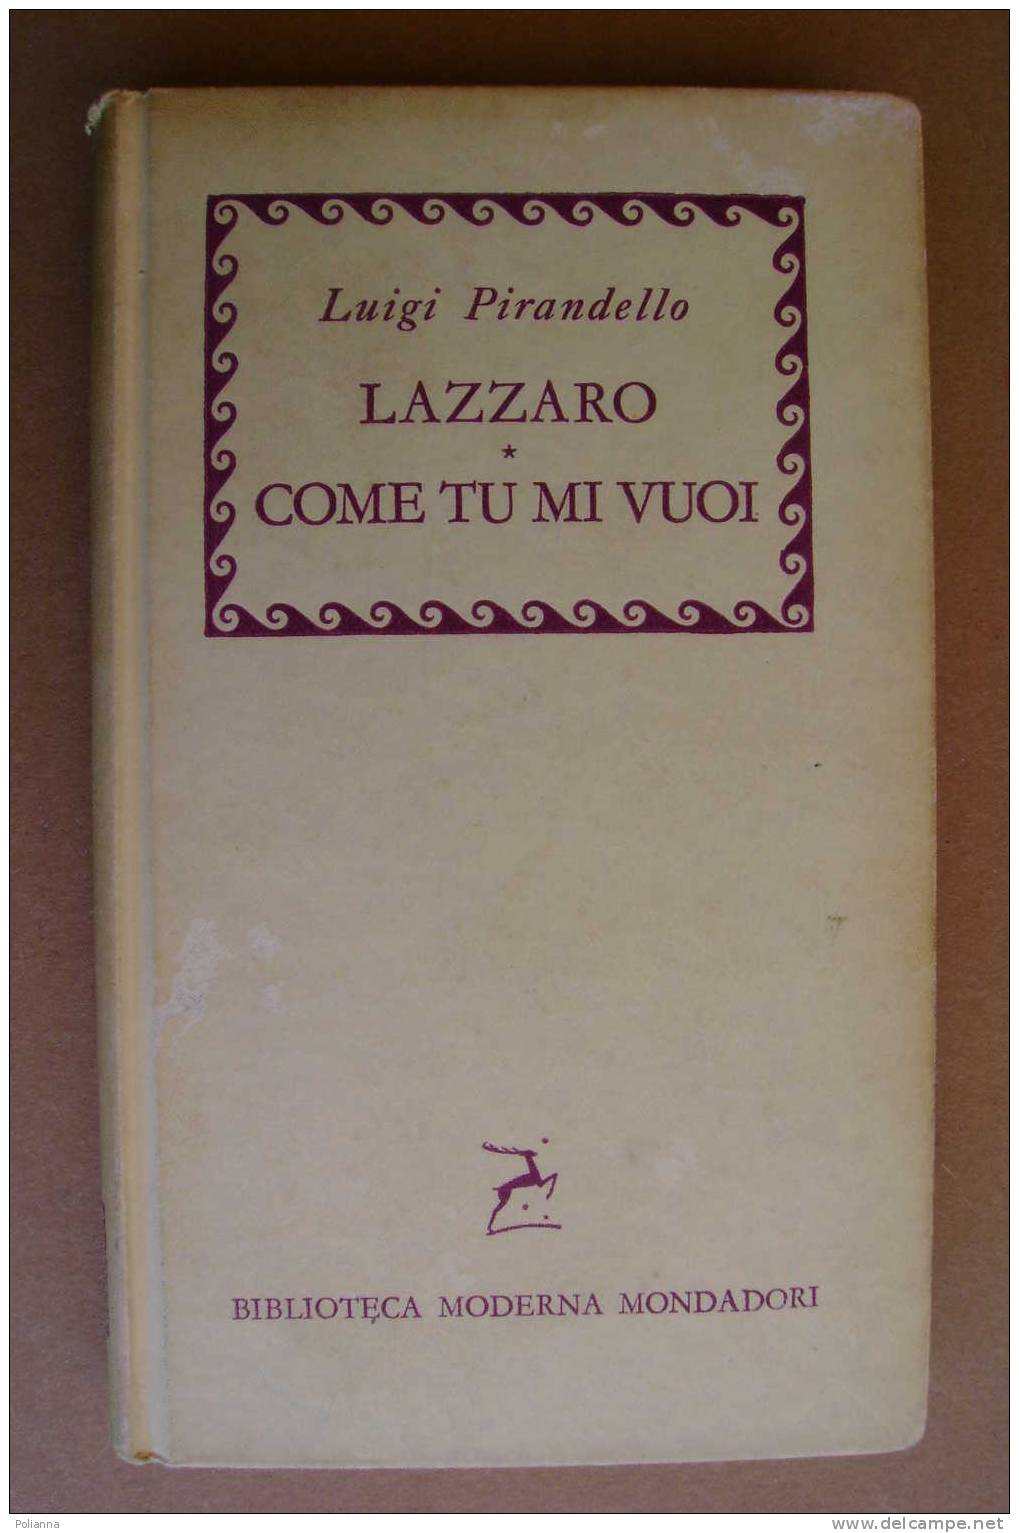 PAL/36 Luigi Pirandello LAZZARO COME TU MI VUOI Biblioteca Monderna Mondadori 1957/ Teatro - Tales & Short Stories